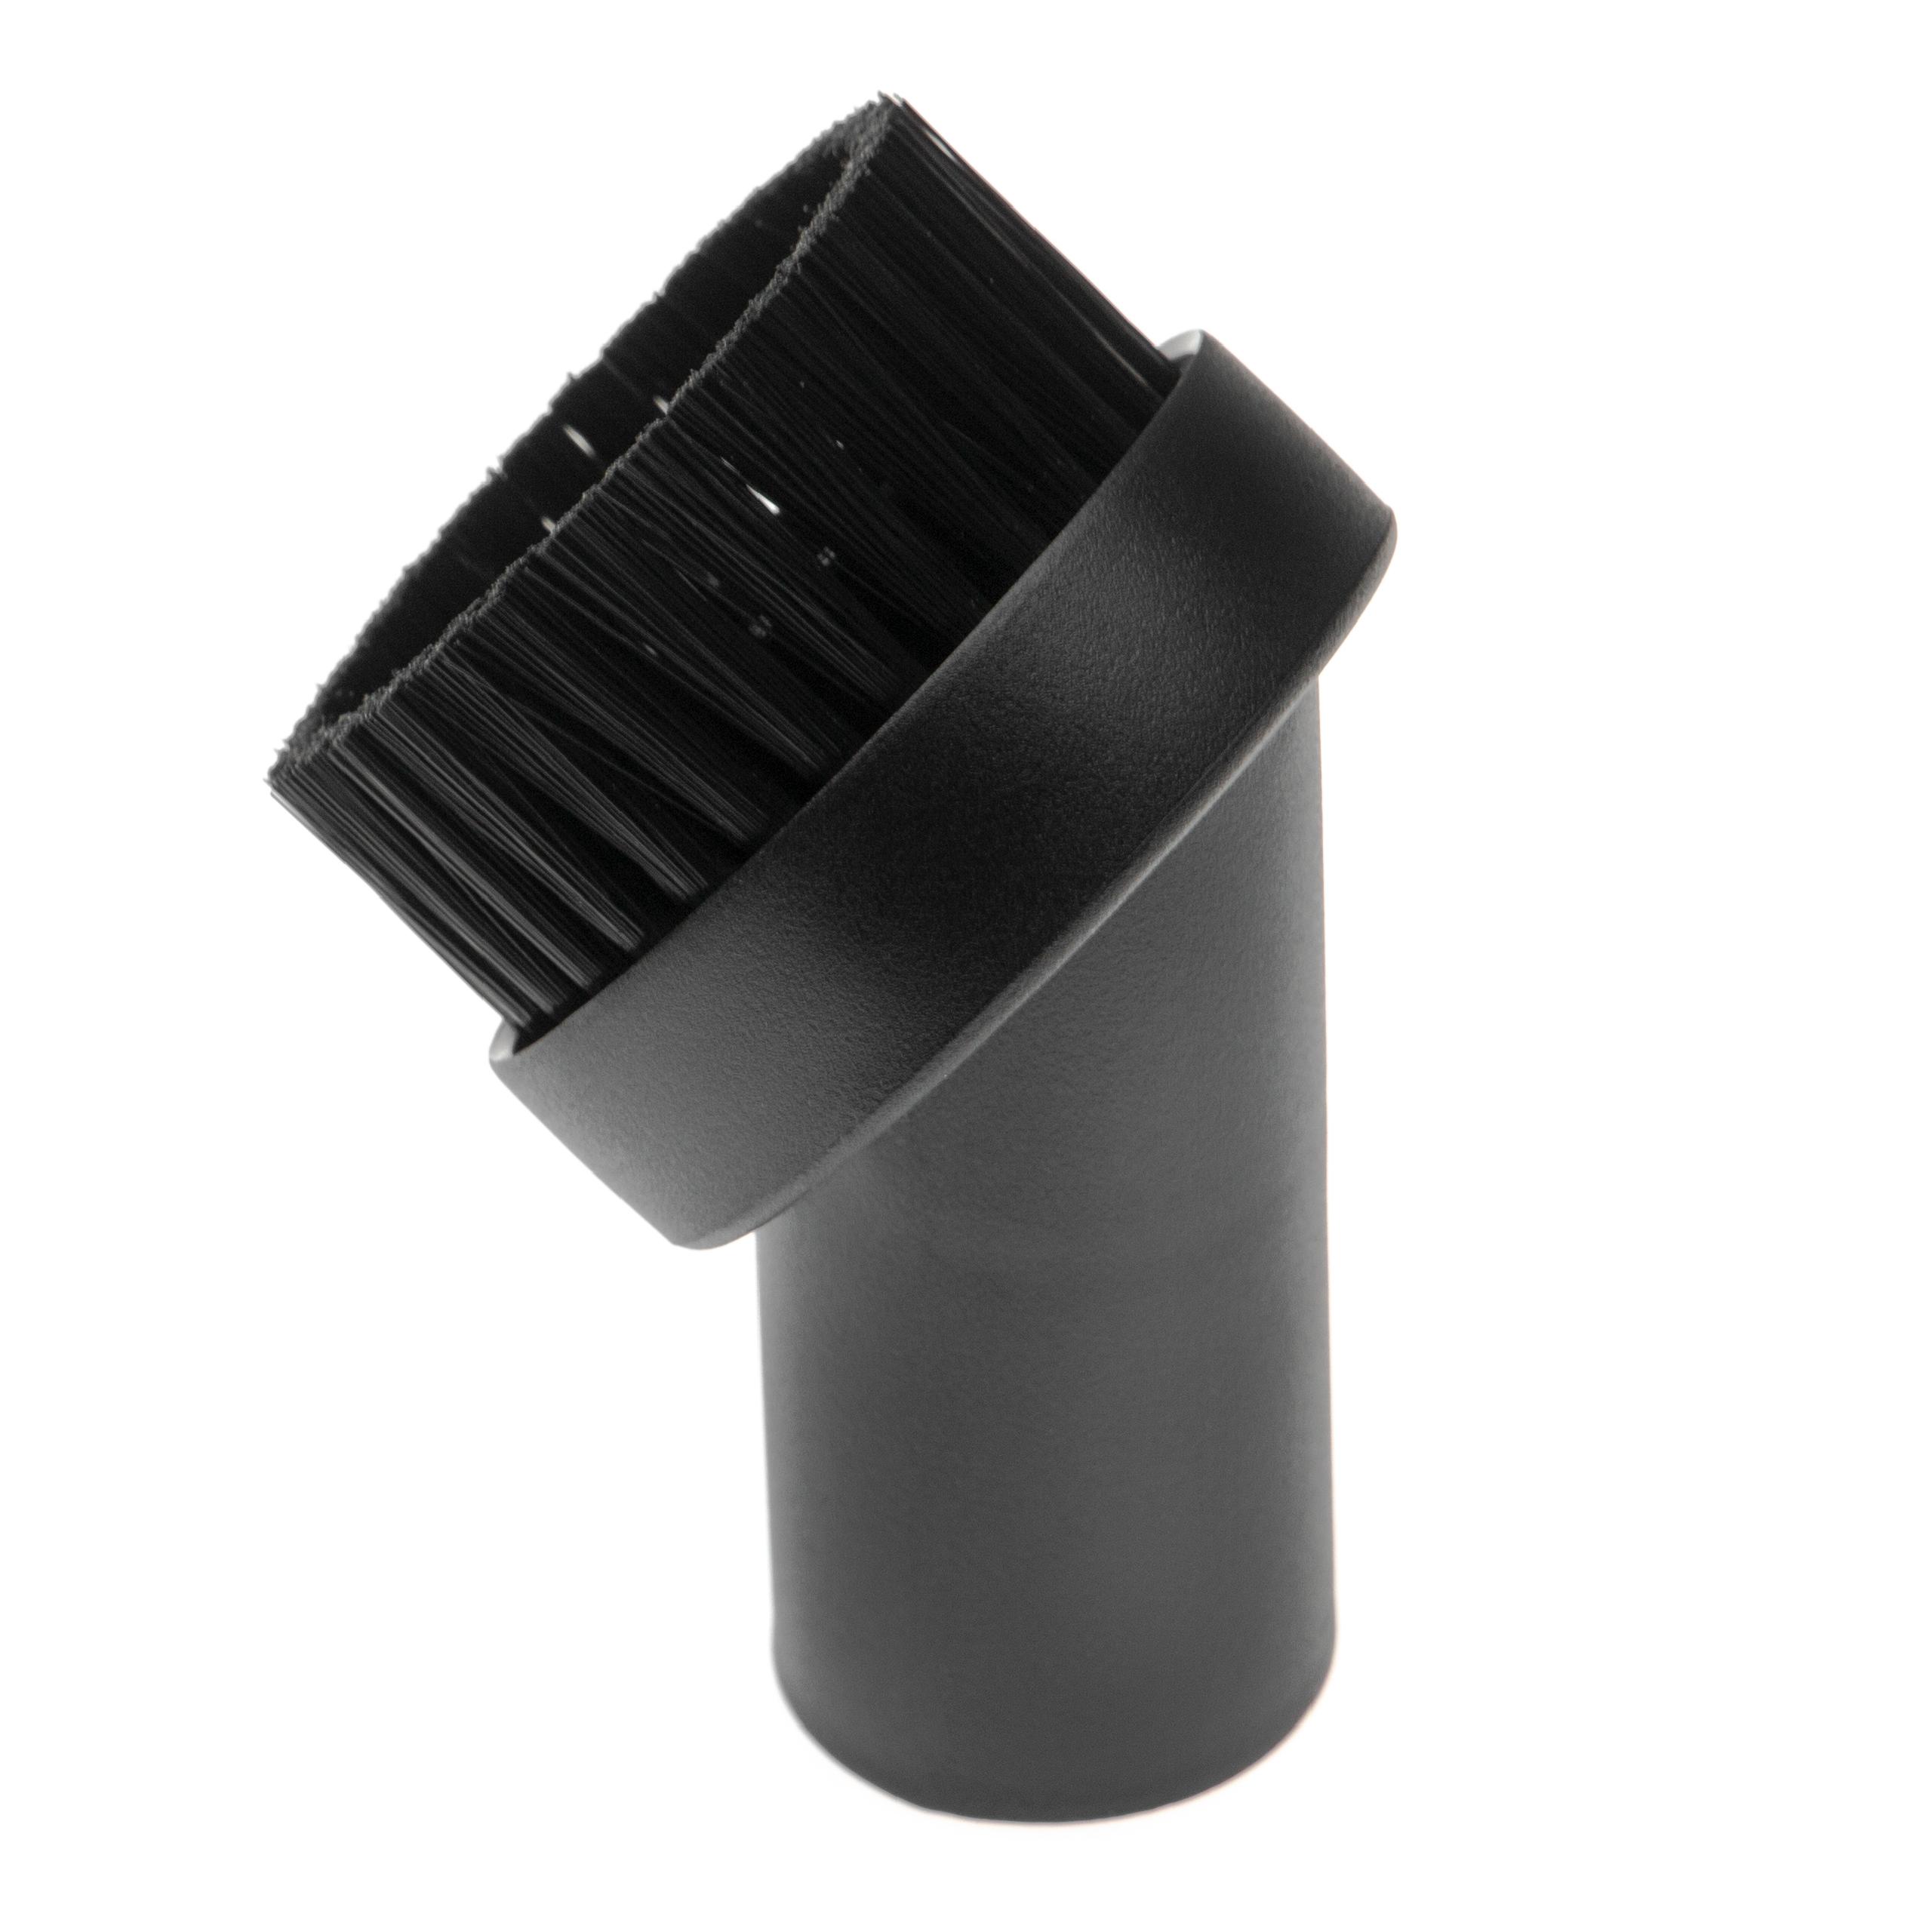  Boquilla cepillo 32 mm conexión para aspiradora - Boquilla de muebles con cerdas